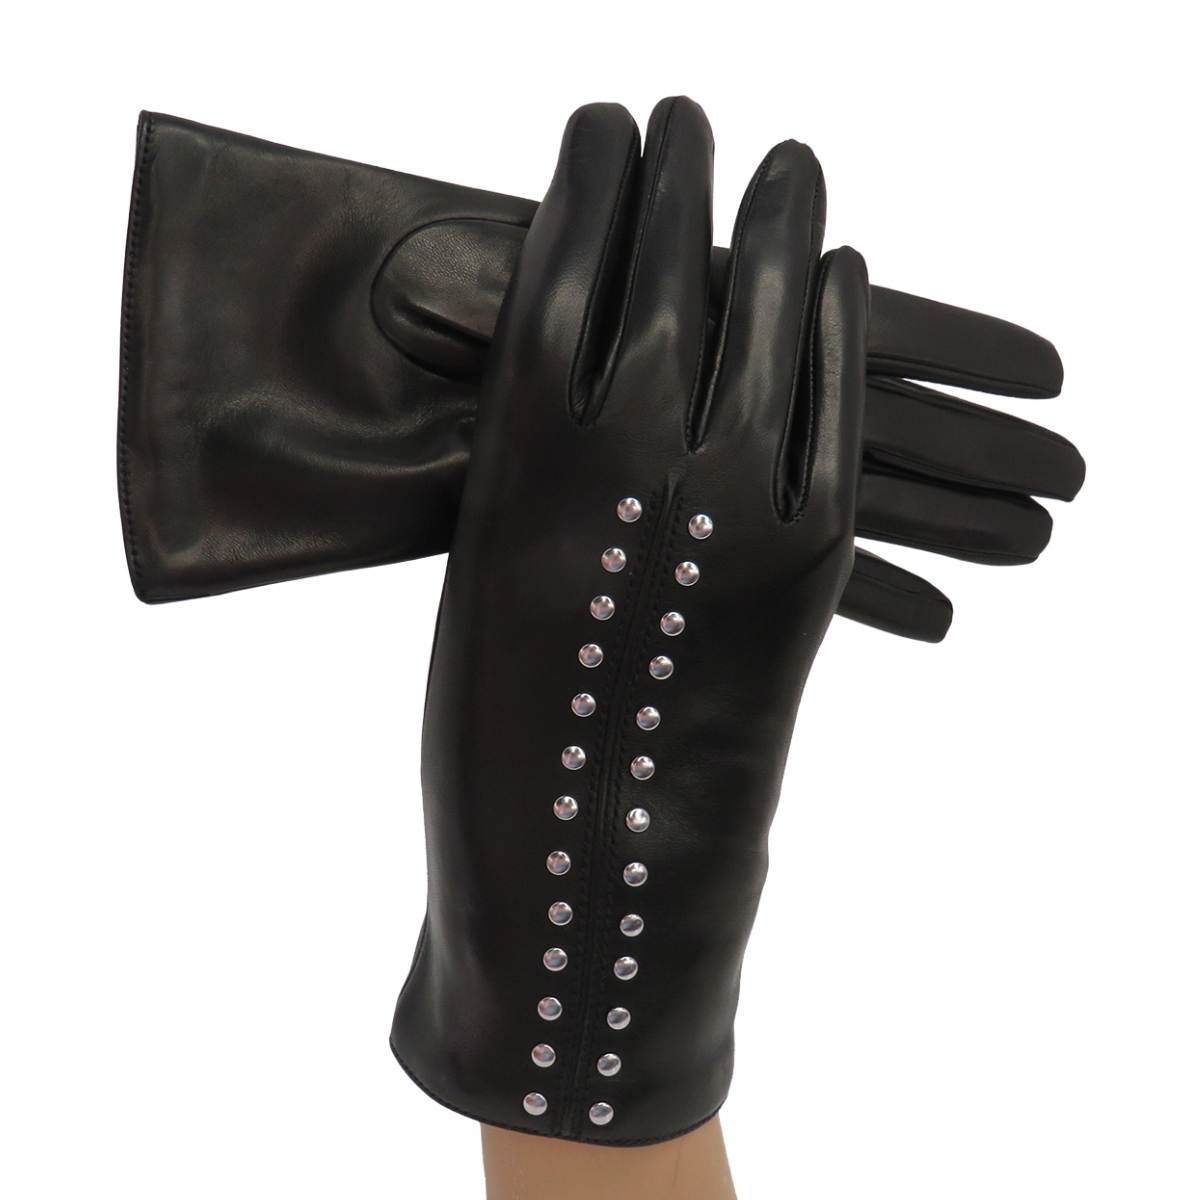 Studs Leather Glove